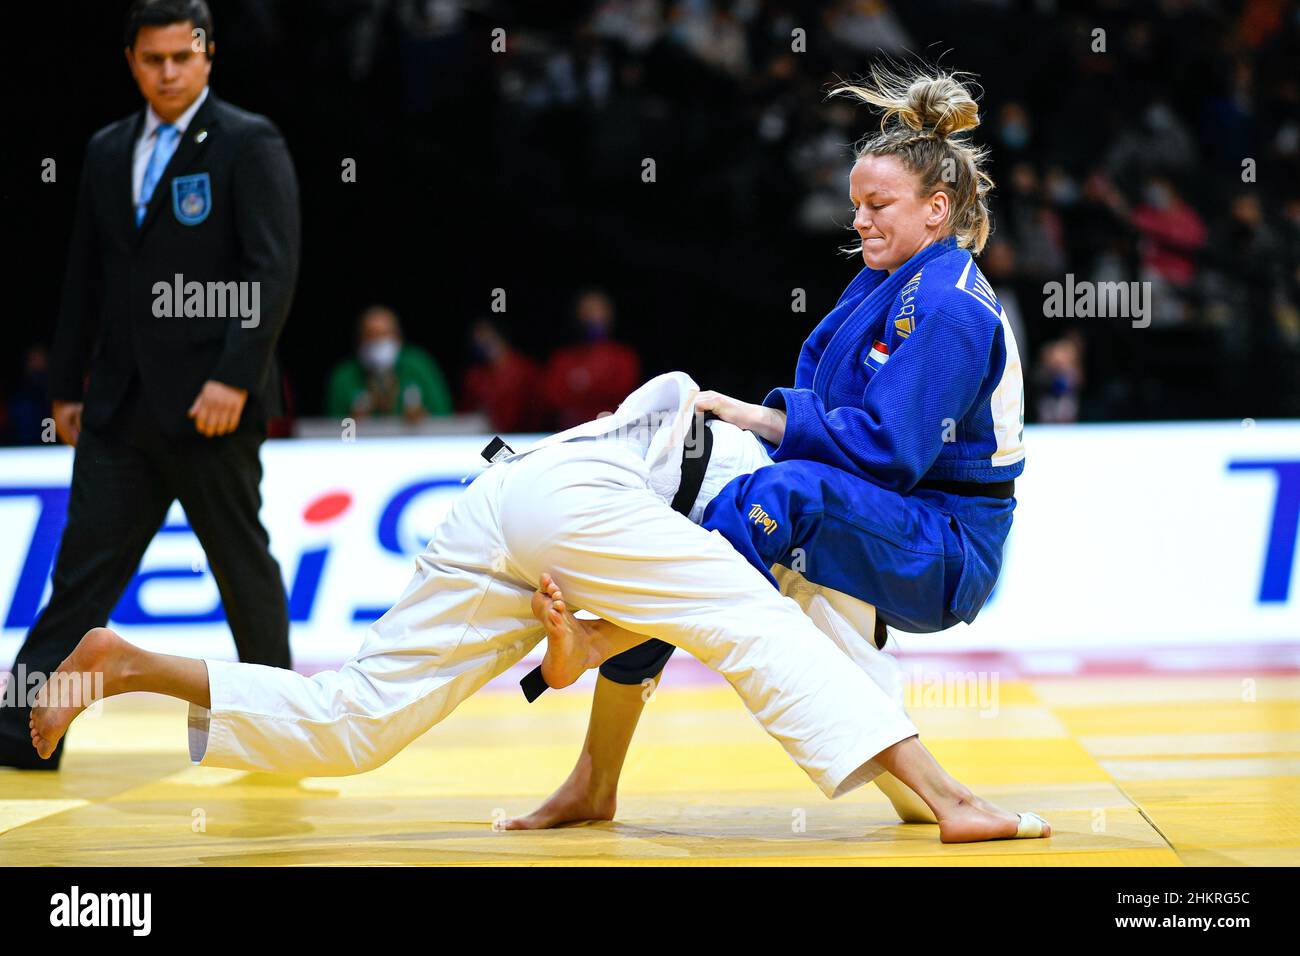 Geke van den Berg aus den Niederlanden tritt während der Paris Grand Slam 2022, IJF World Judo Tour am 5. Februar 2022 in der Accor Arena in Paris, Frankreich, an - Foto Victor Joly / DPPI Stockfoto